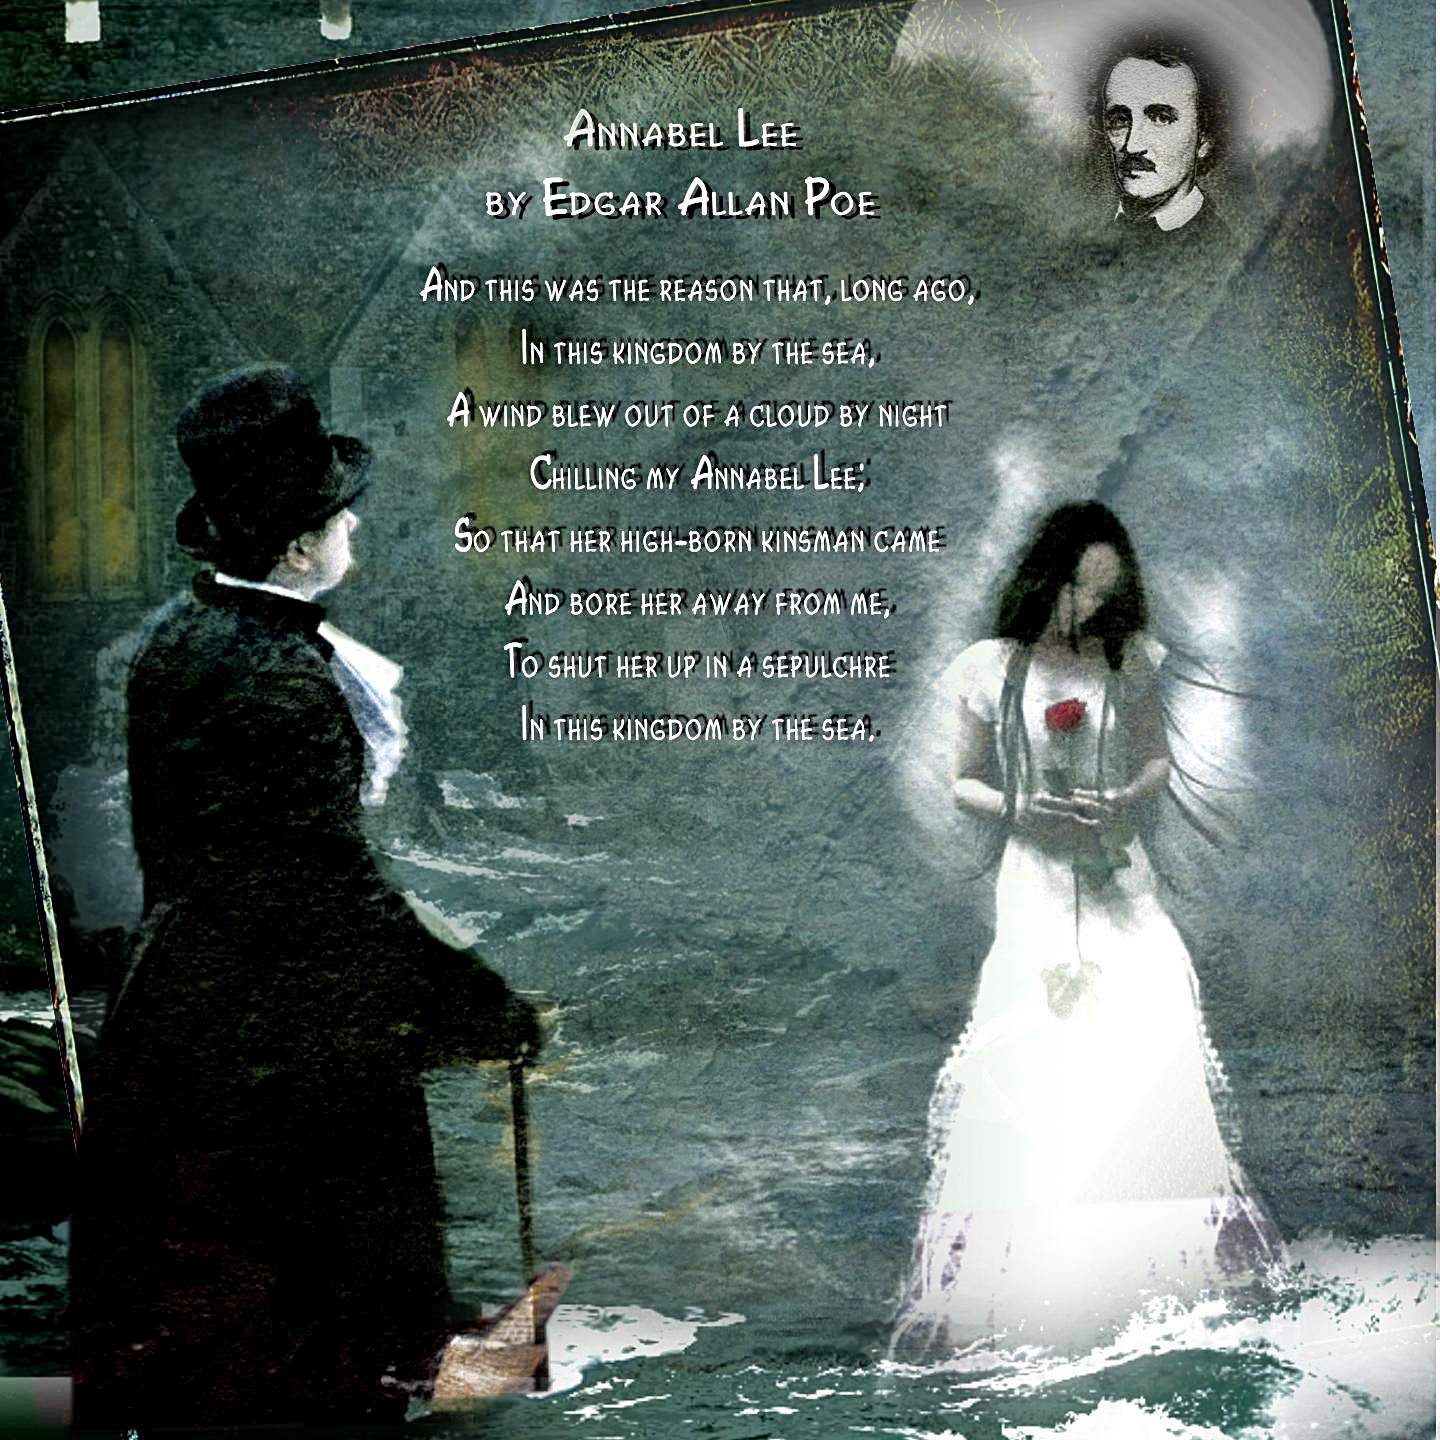 [um Toque Poético] “annabel Lee” De Edgar Allan Poe Traduzido Por Fernando Pessoa Um Blog